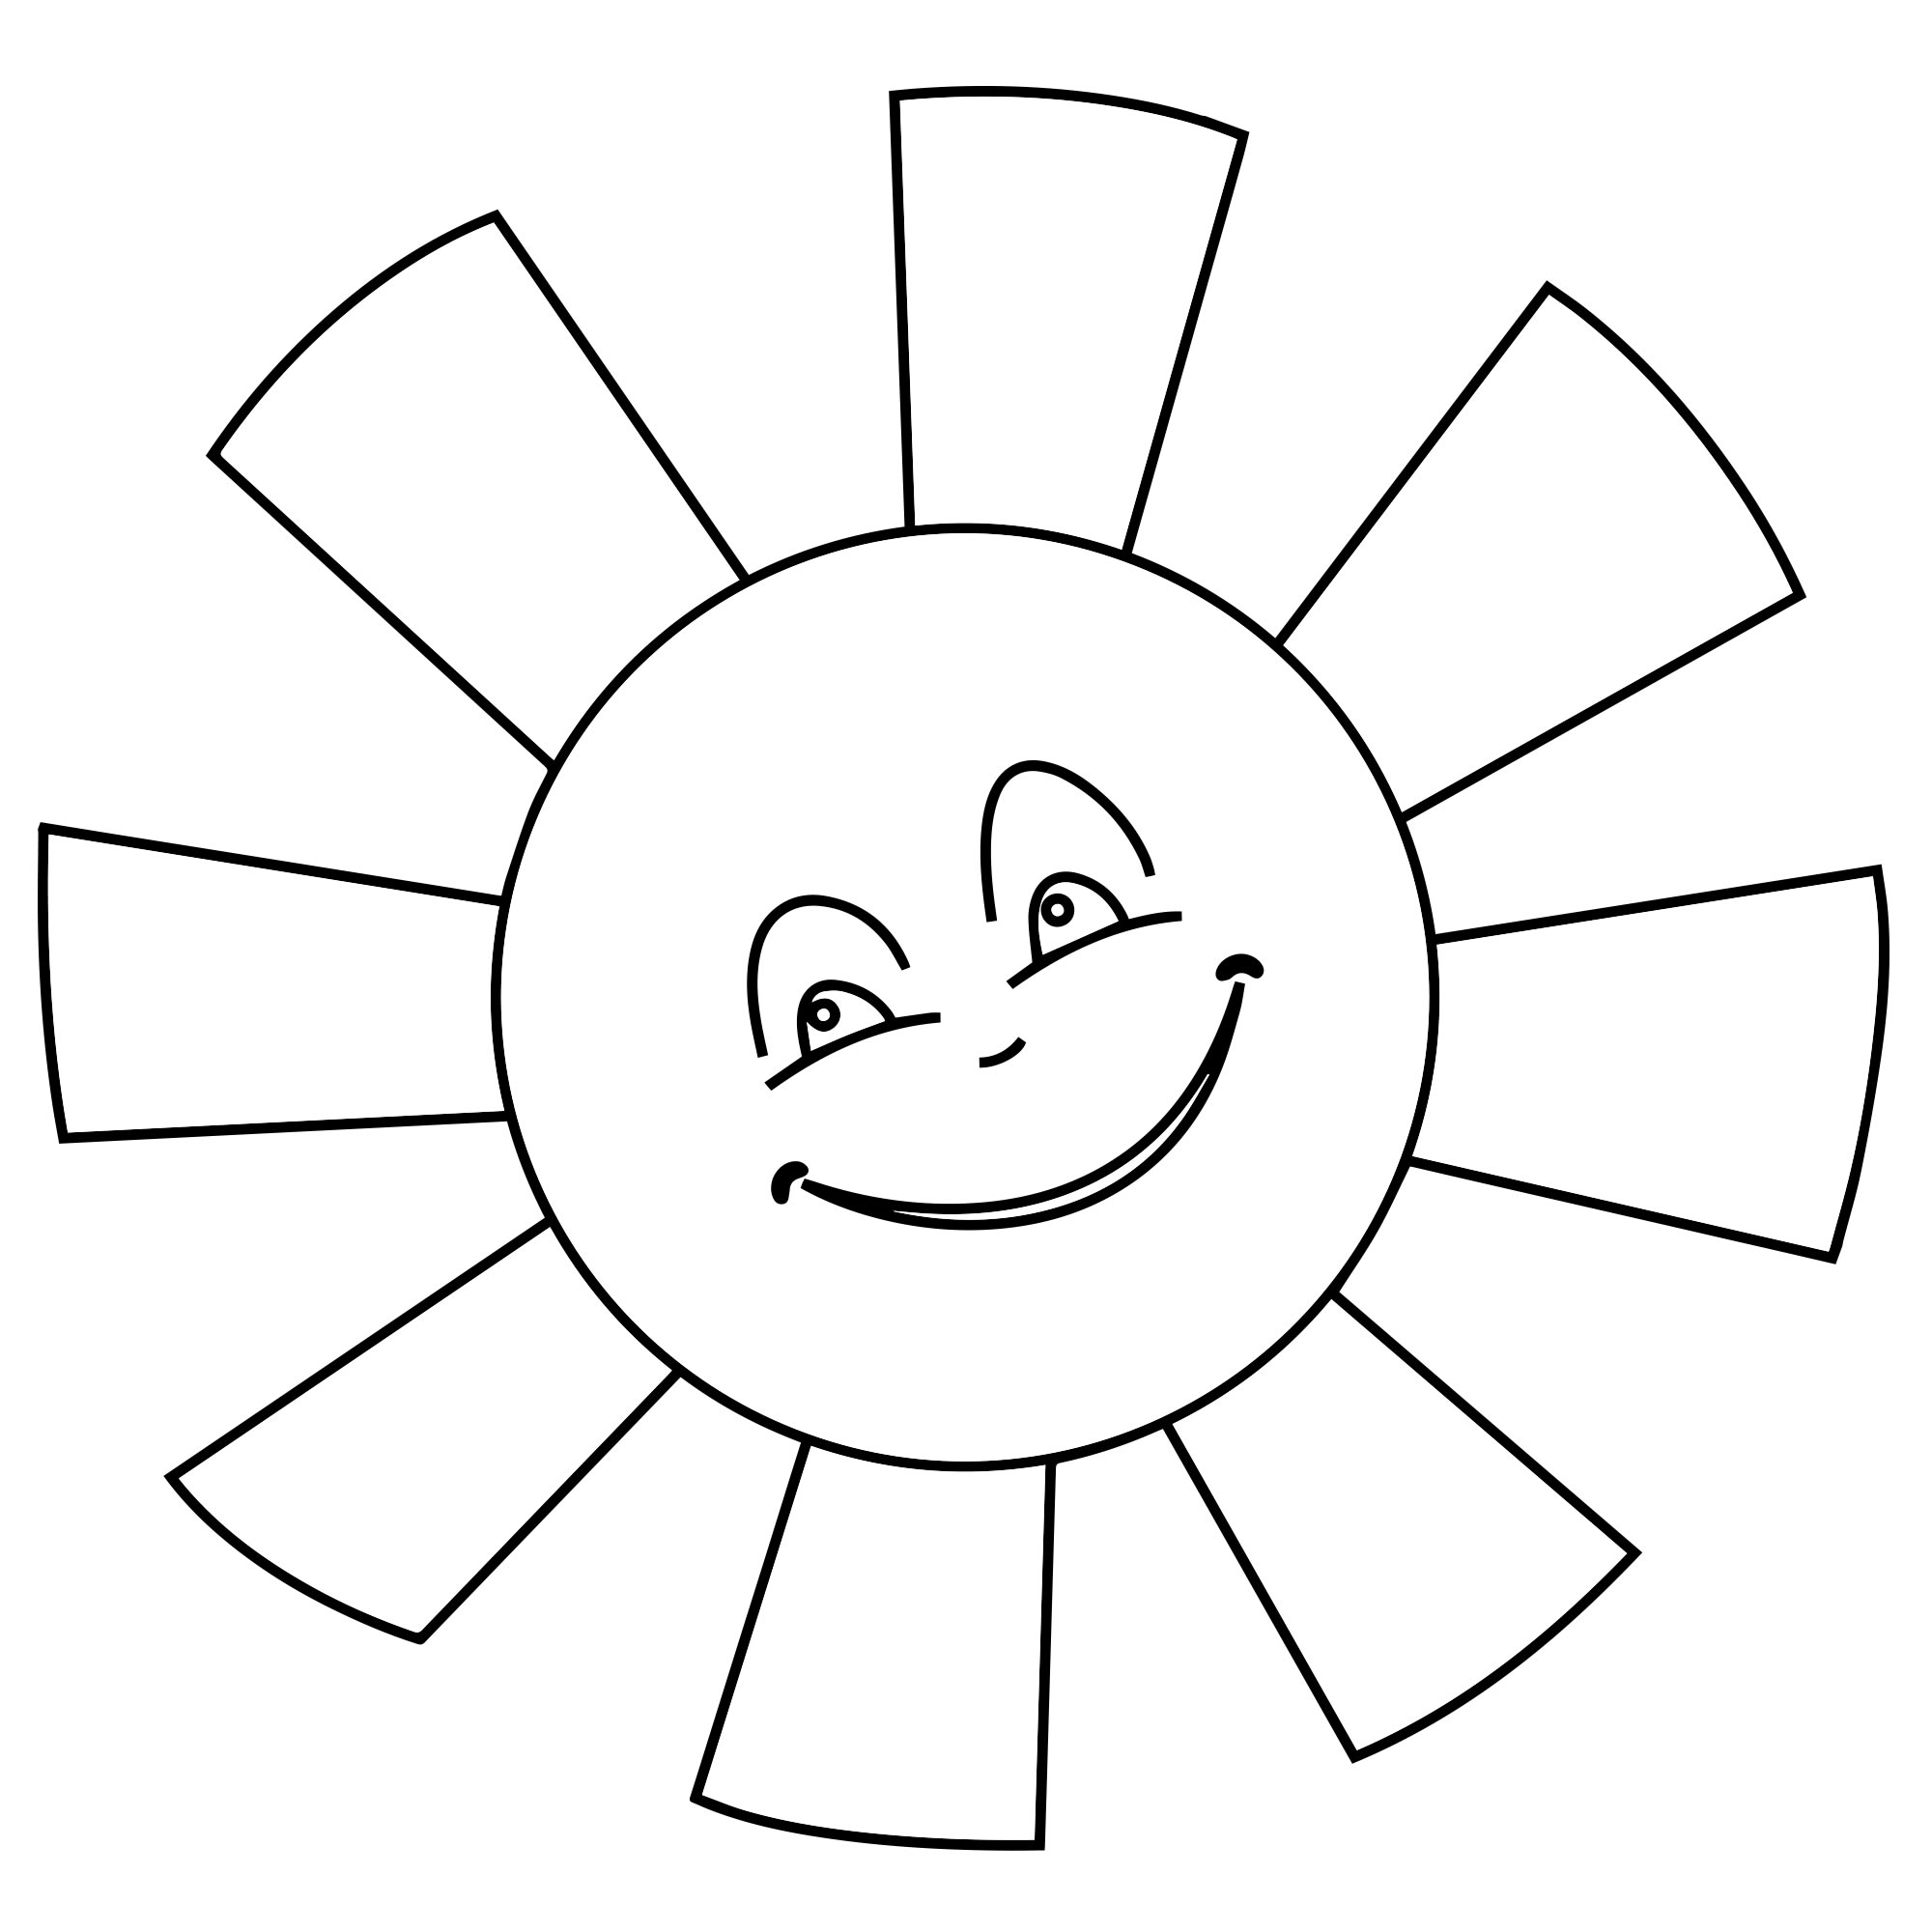 Рисование на тему: «Солнышко лучистое». Младшая группа.